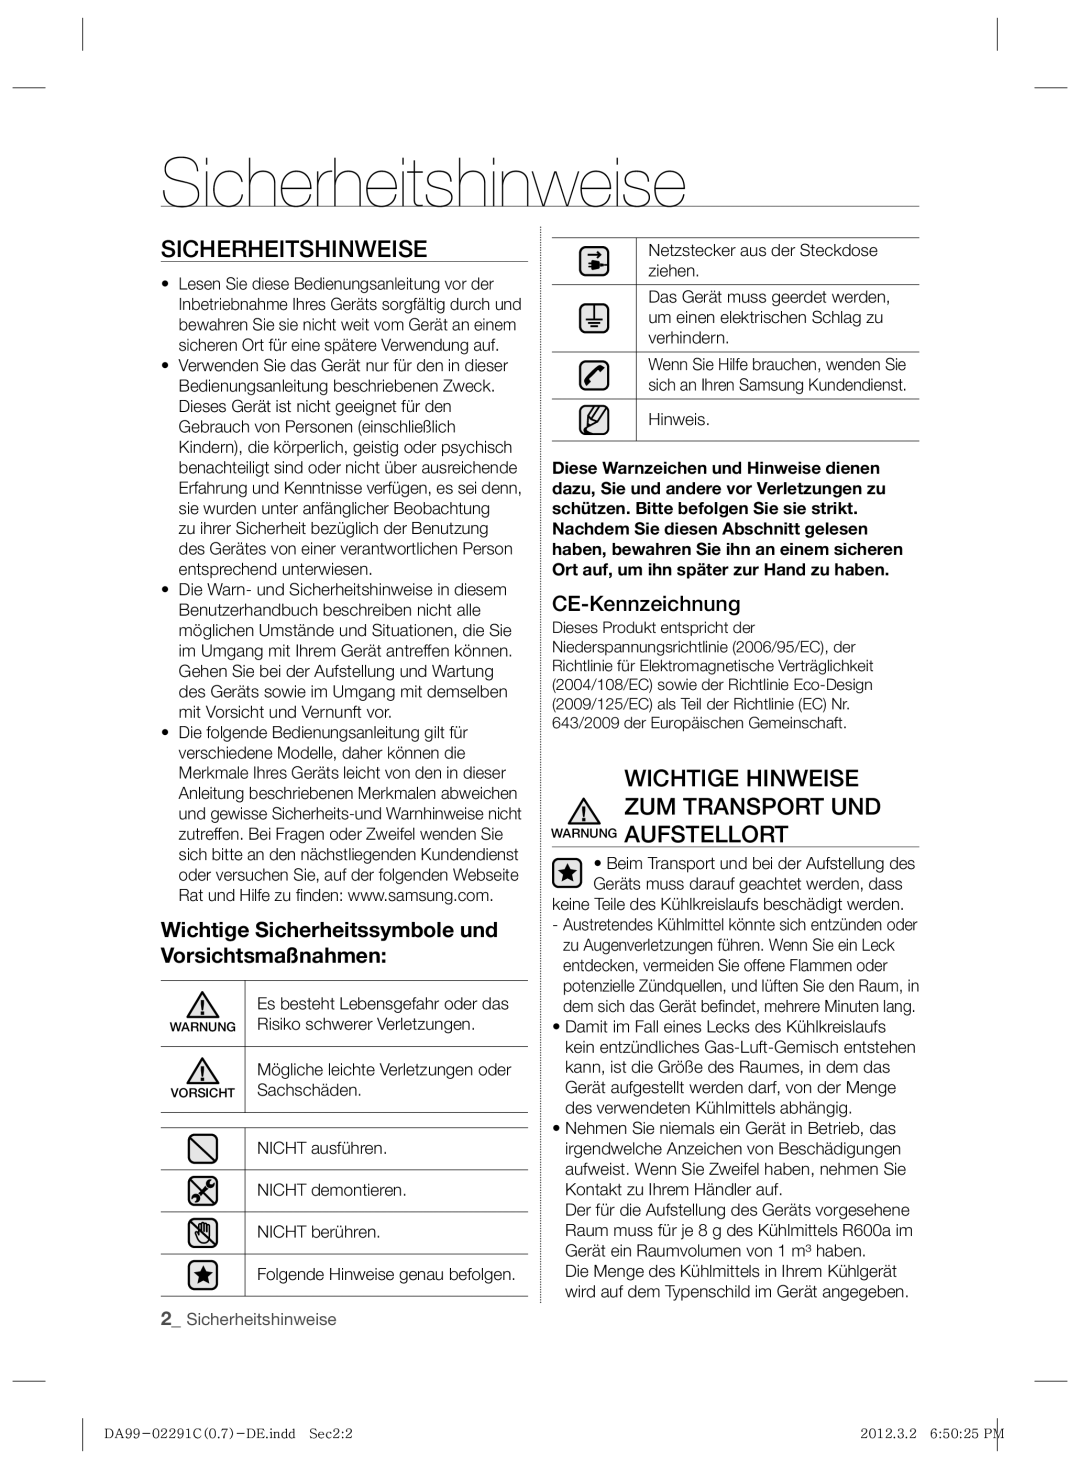 Samsung RSH7PNRS1/XEG manual Sicherheitshinweise, Wichtige Hinweise Zum Transport Und Warnung Aufstellort, CE-Kennzeichnung 